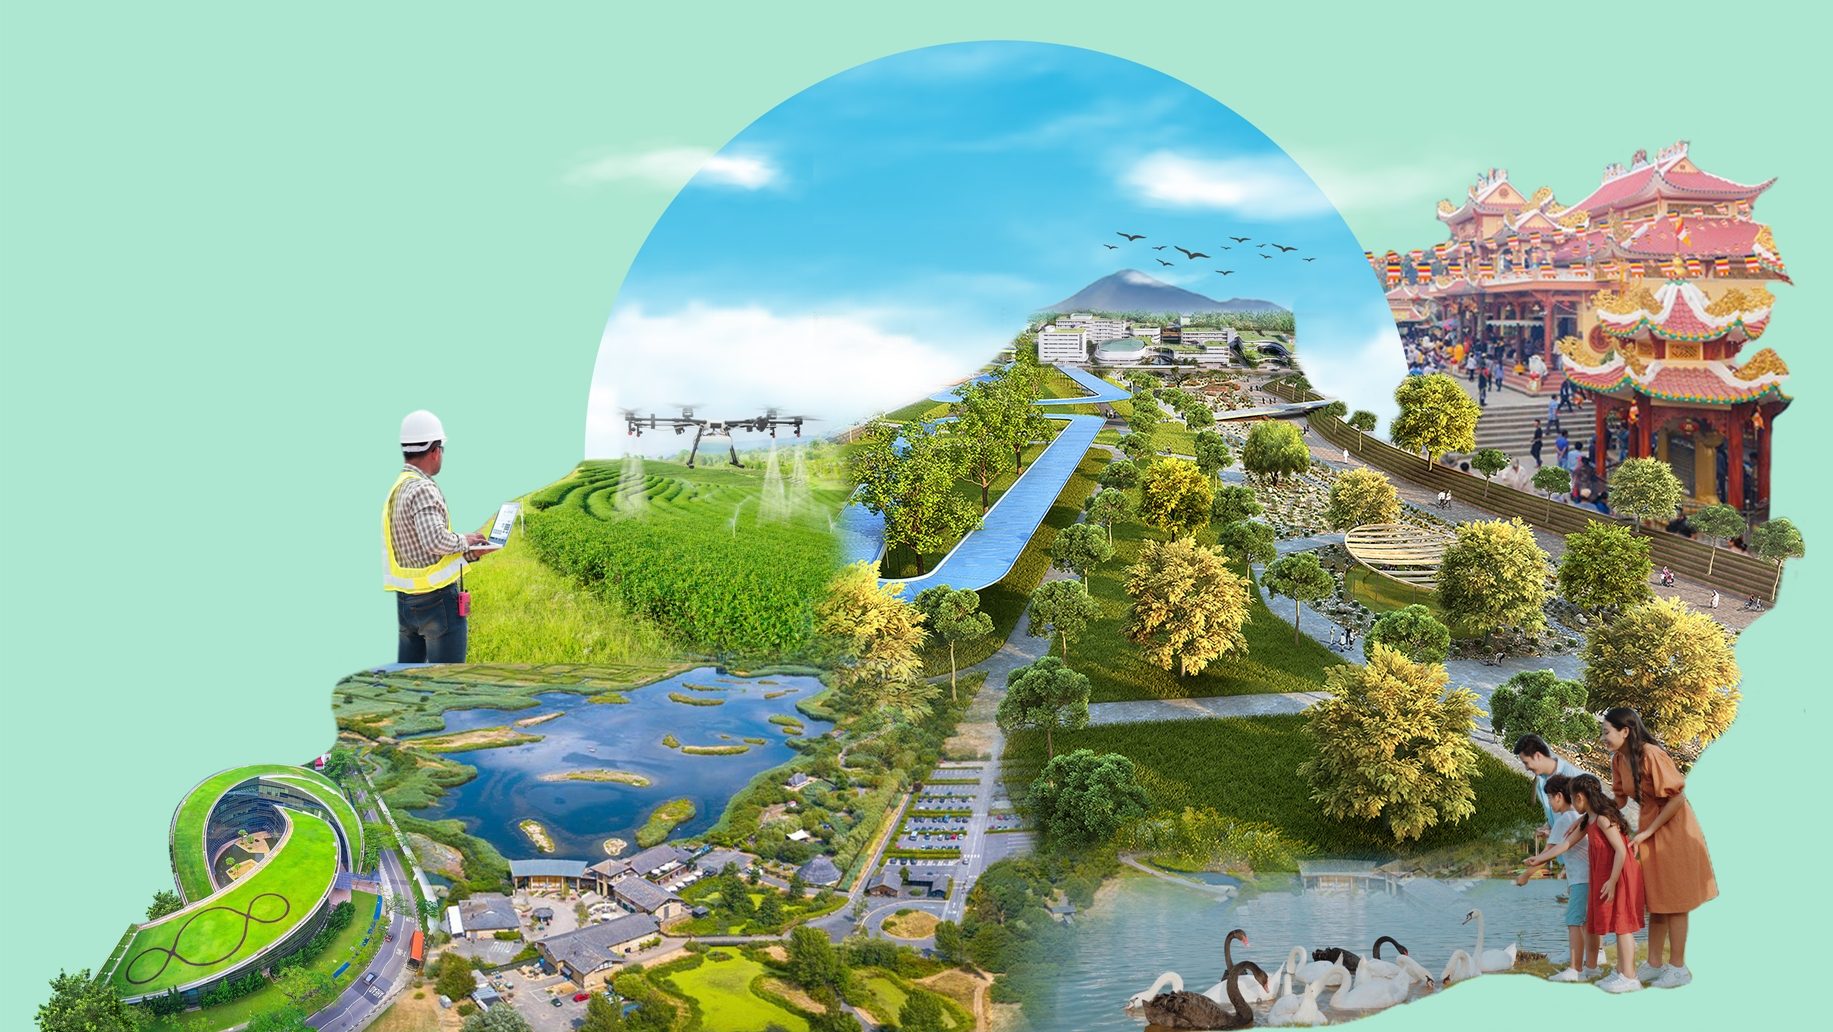 Quy hoạch tỉnh Tây Ninh giai đoạn 2021-2030, tầm nhìn 2050